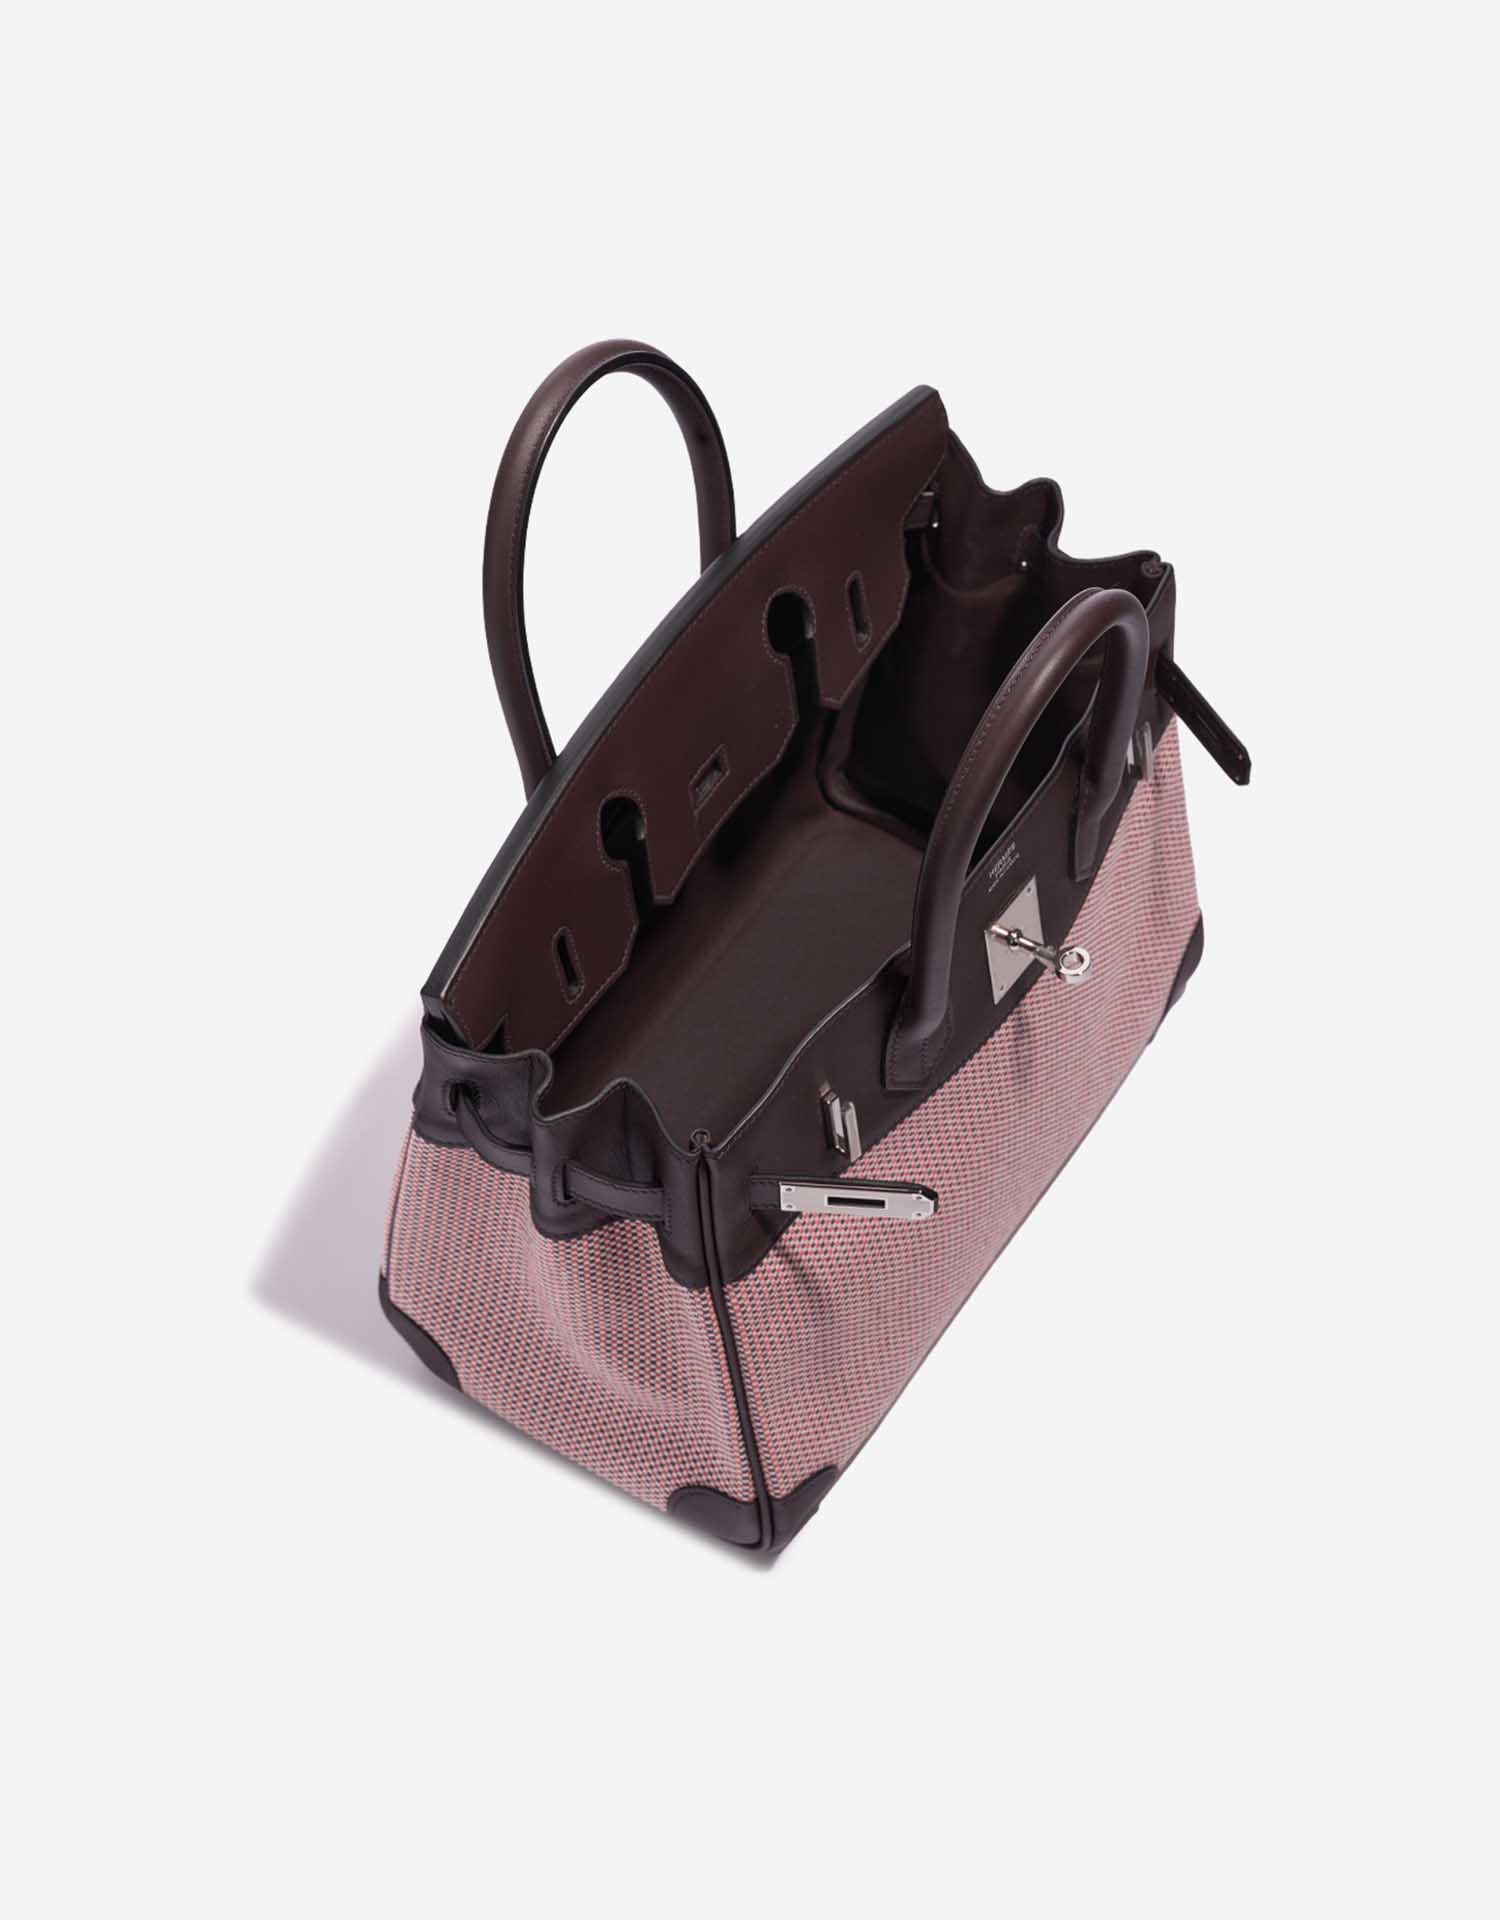 Hermès Birkin 30 Ecru-RougeSellier-Anemone-Brique Innenseite | Verkaufen Sie Ihre Designer-Tasche auf Saclab.com